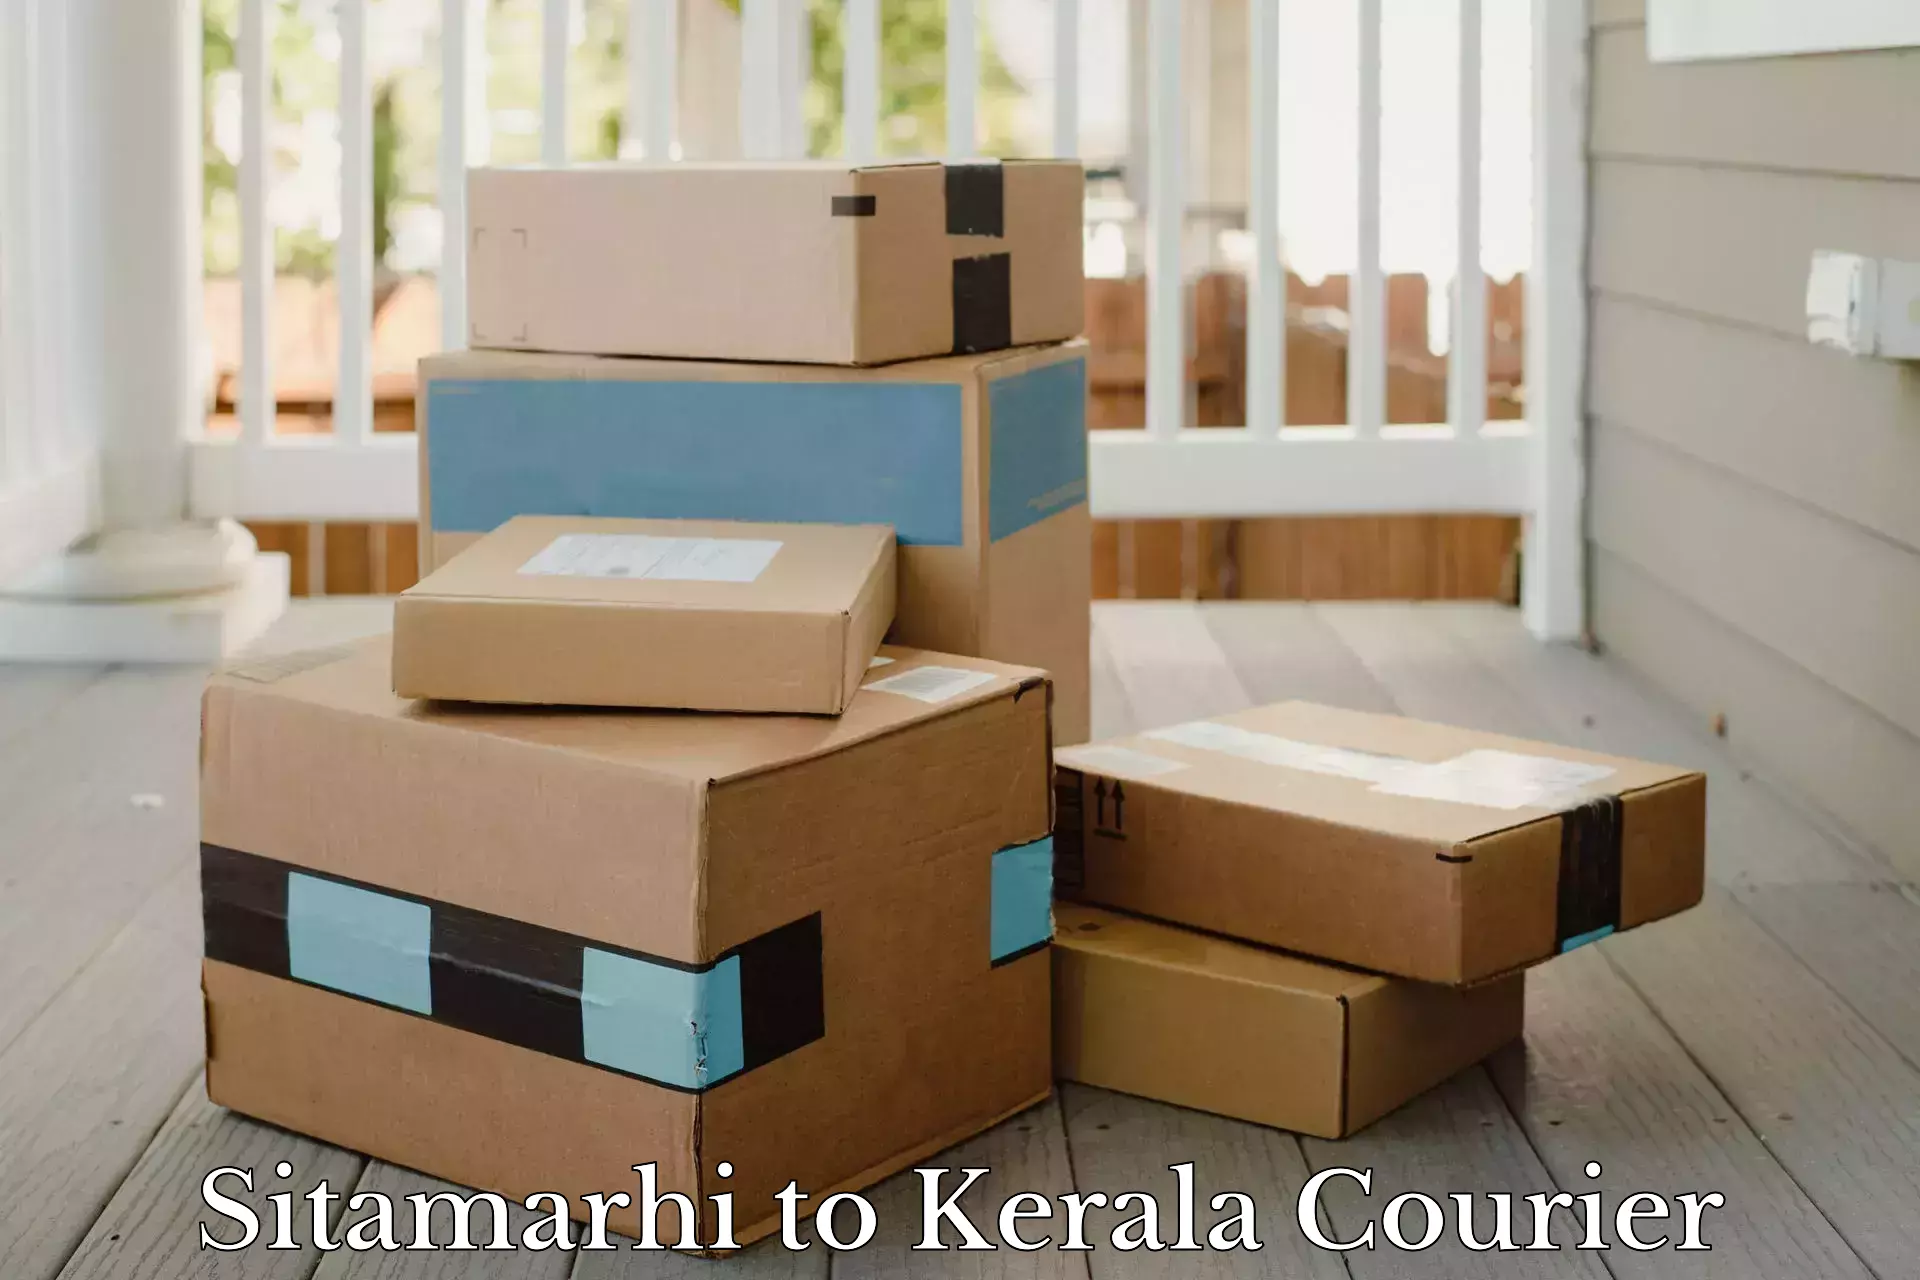 Efficient parcel service Sitamarhi to Kerala